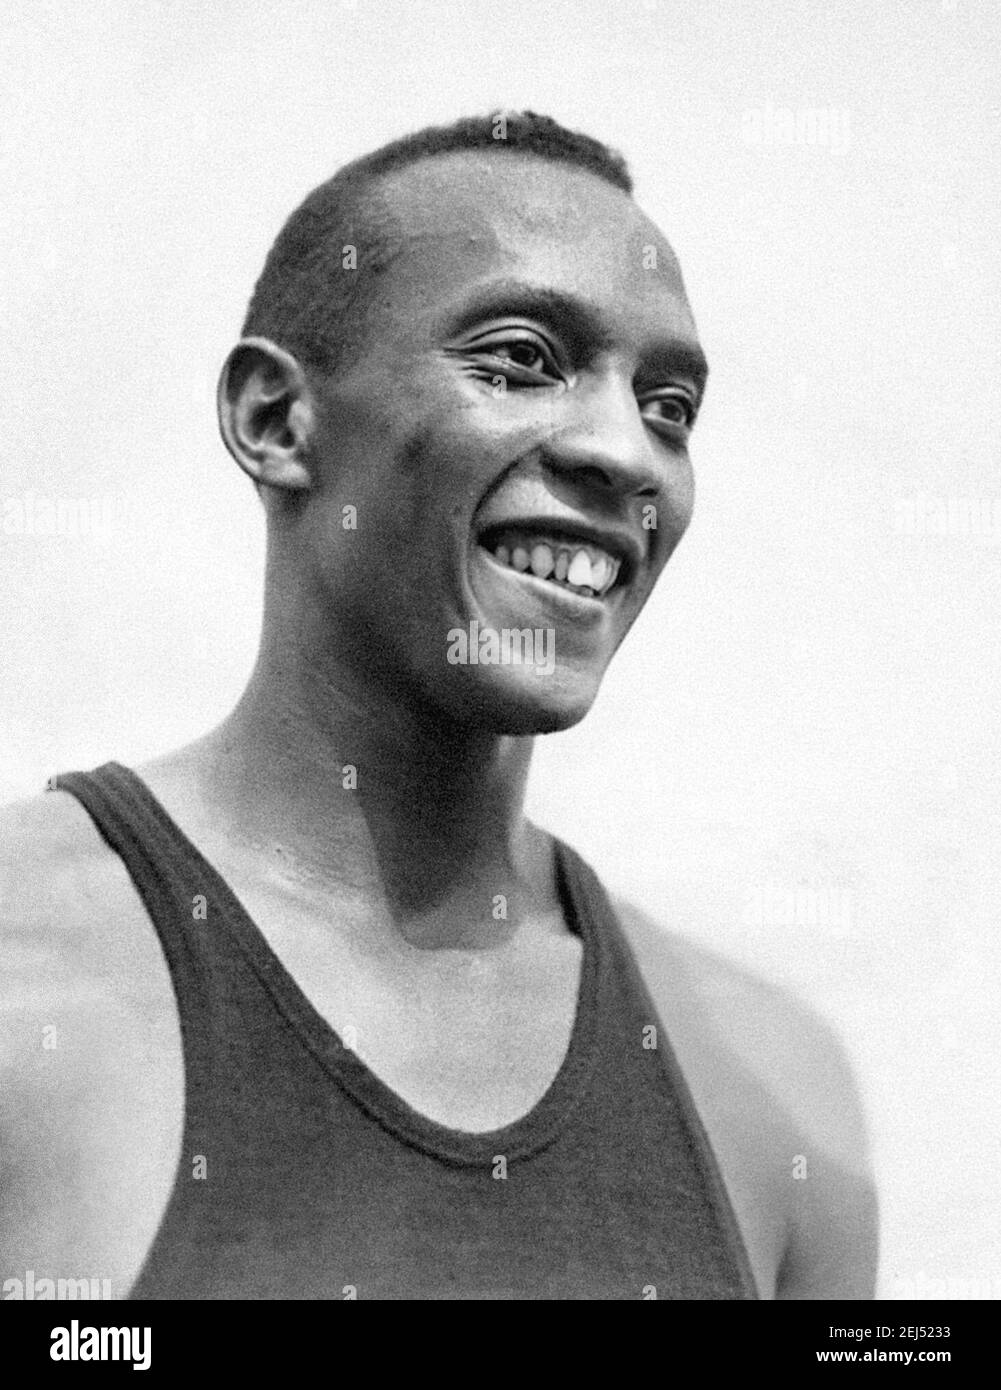 Jesse Owens. Porträt des amerikanischen Sprinters James Cleveland 'Jesse' Owens (1913-1980) bei den Olympischen Spielen 1936 in Berlin. Stockfoto